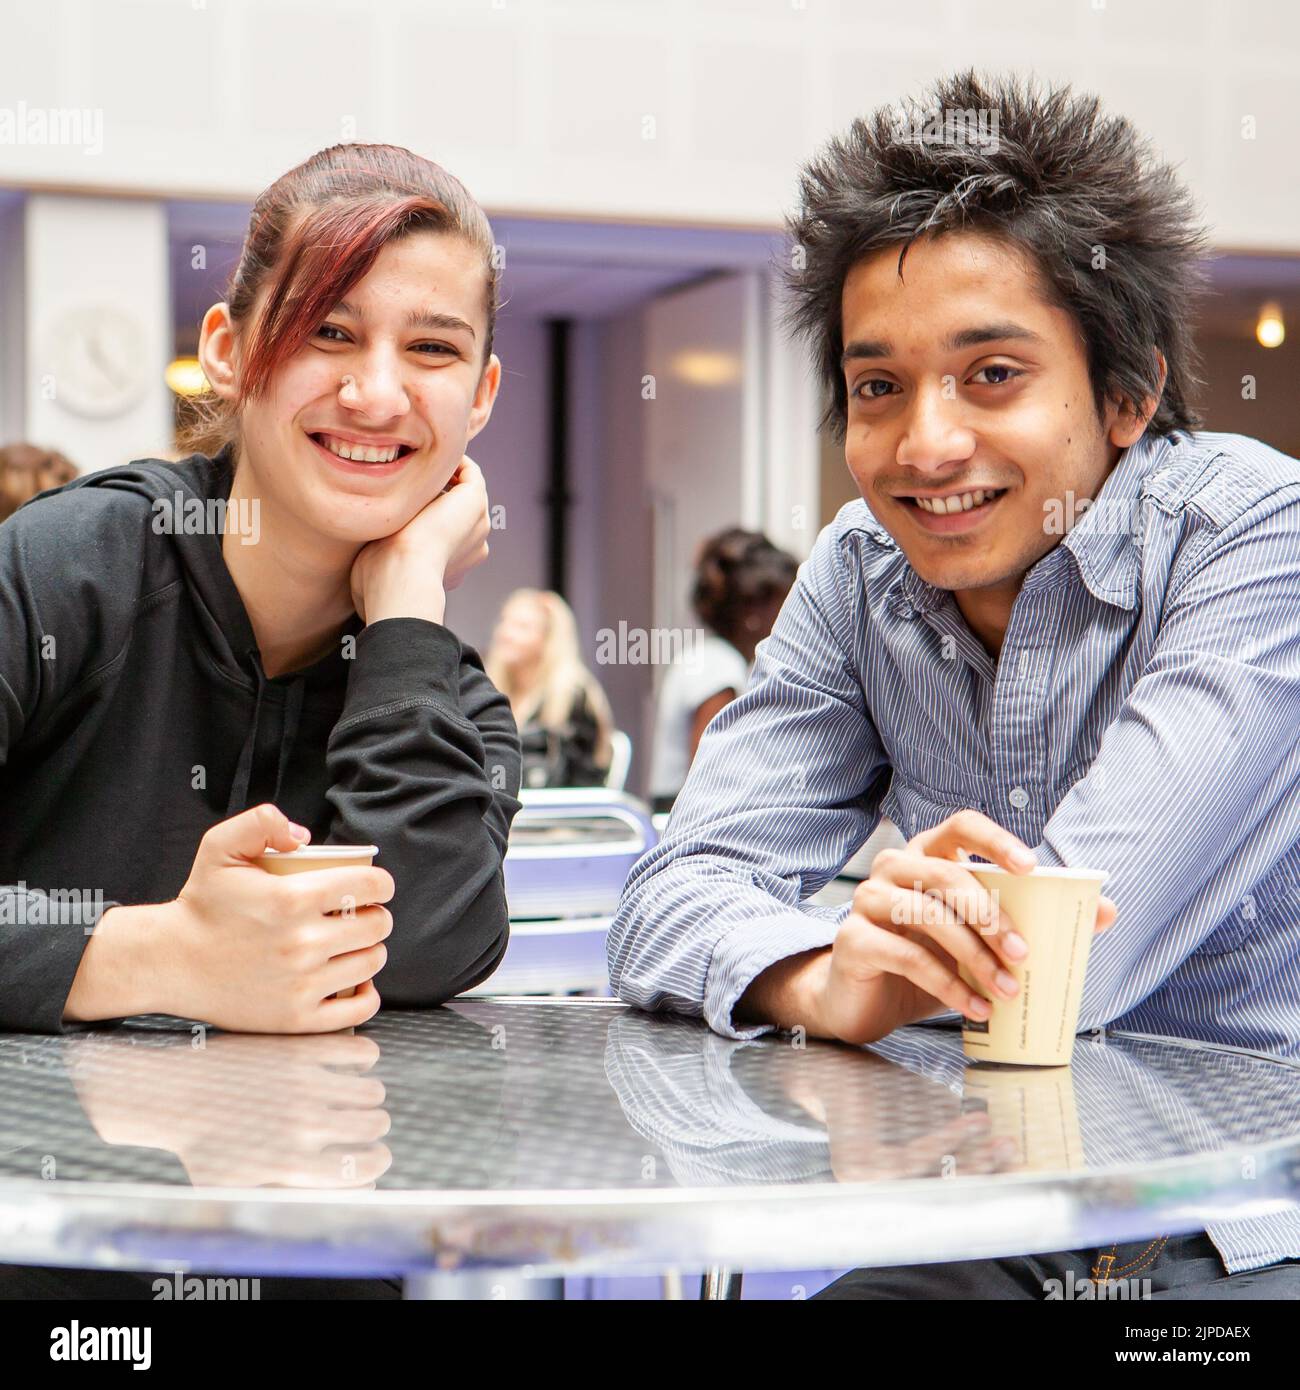 Adolescents, visages amicaux. Amis d'école se détendant autour d'un café dans leur réfectoire d'université. À partir d'une série d'images associées. Banque D'Images